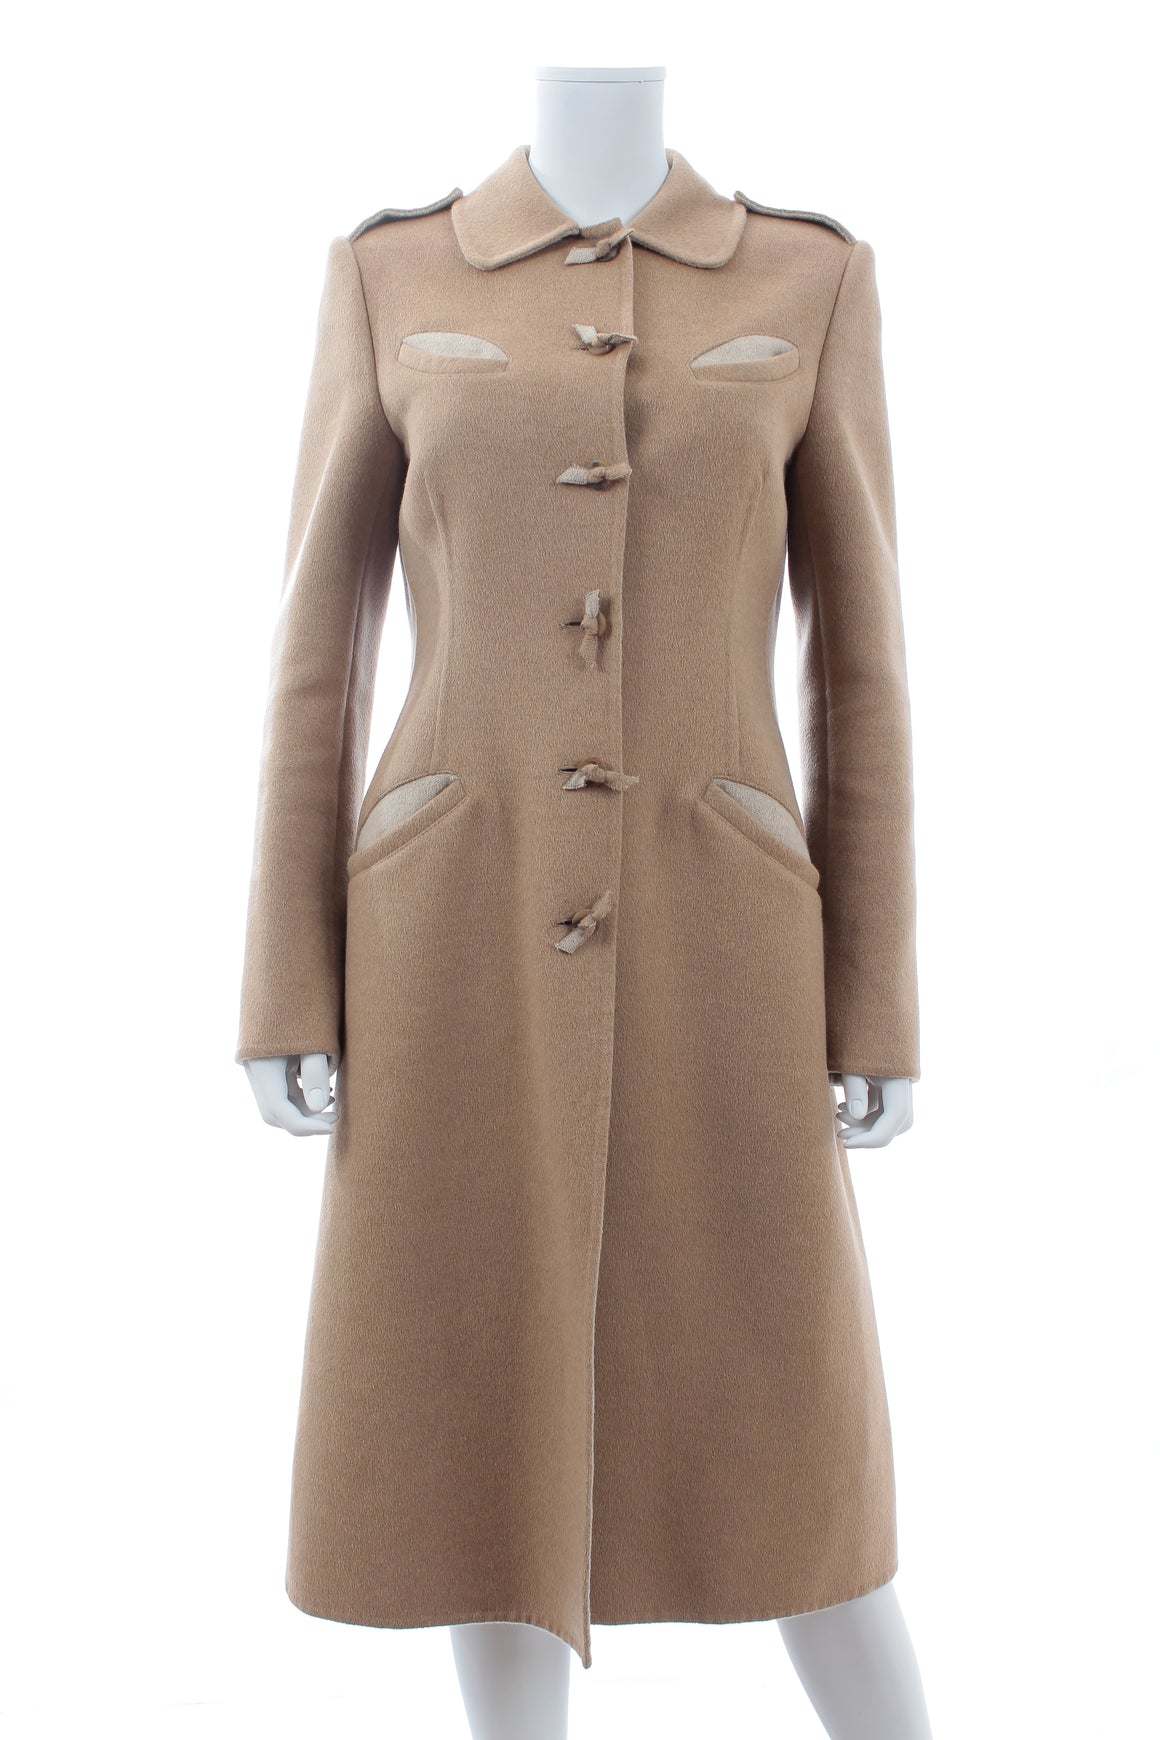 Prada Wool-Angora Long Coat